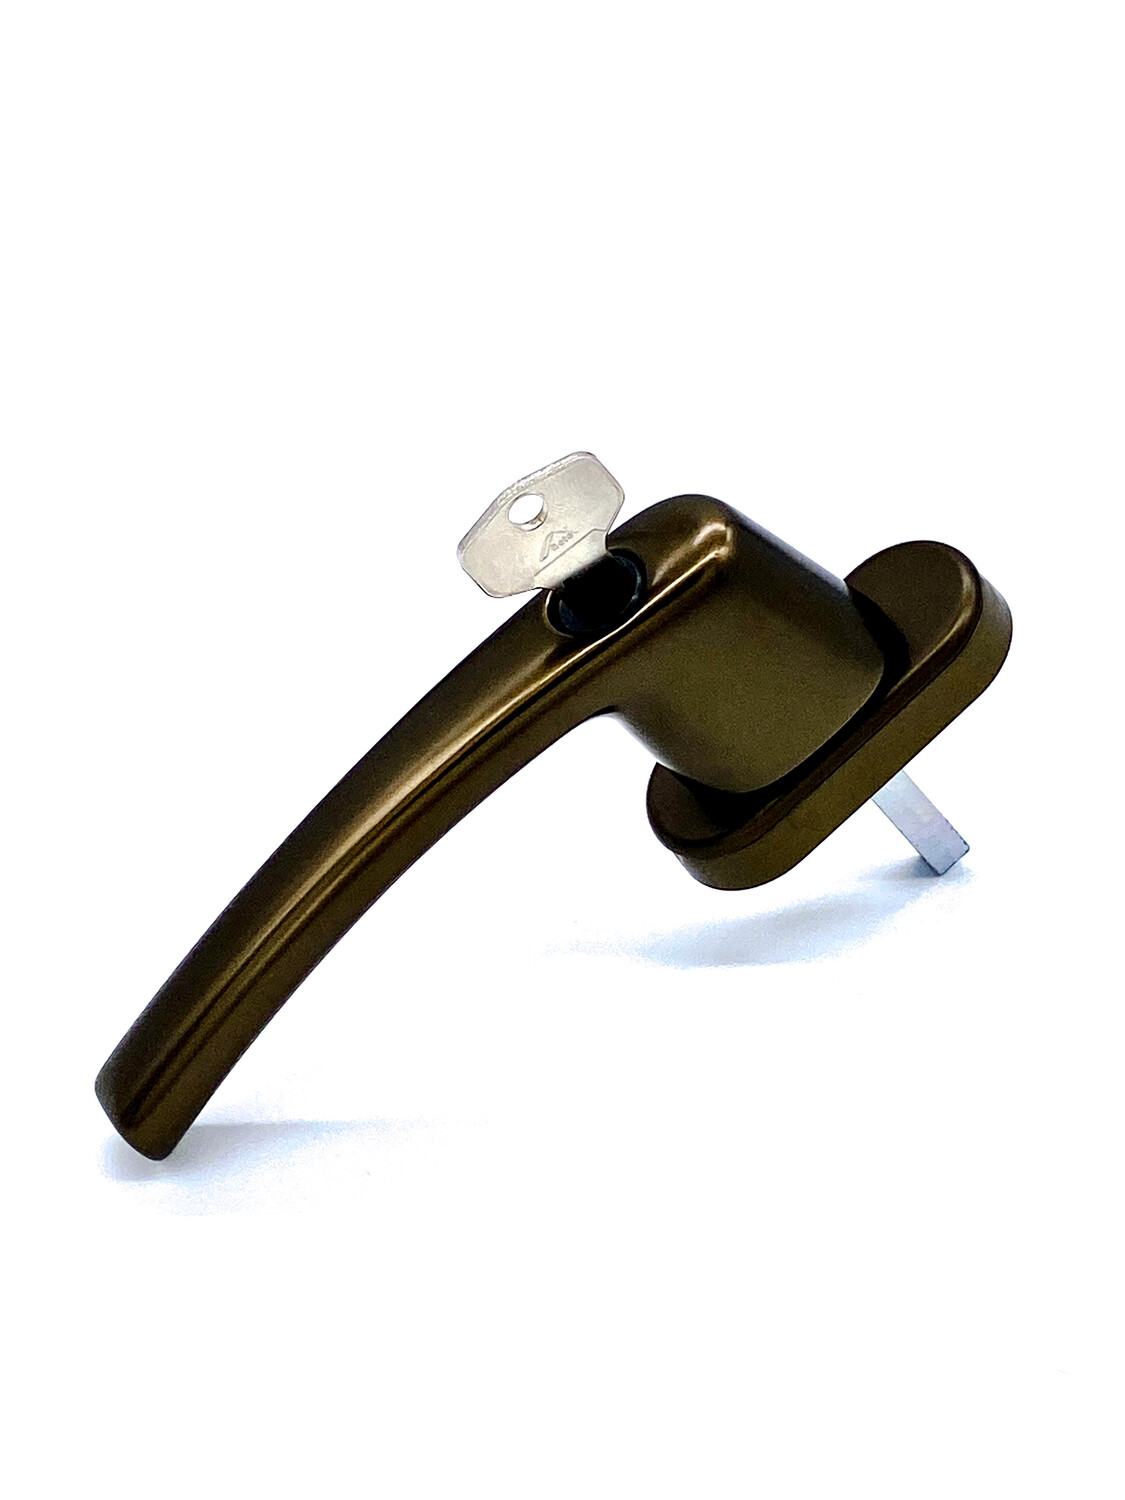 Bronzefarbene Abschließbare Olive mit 37 mm Stiftlänge und 100 Nm